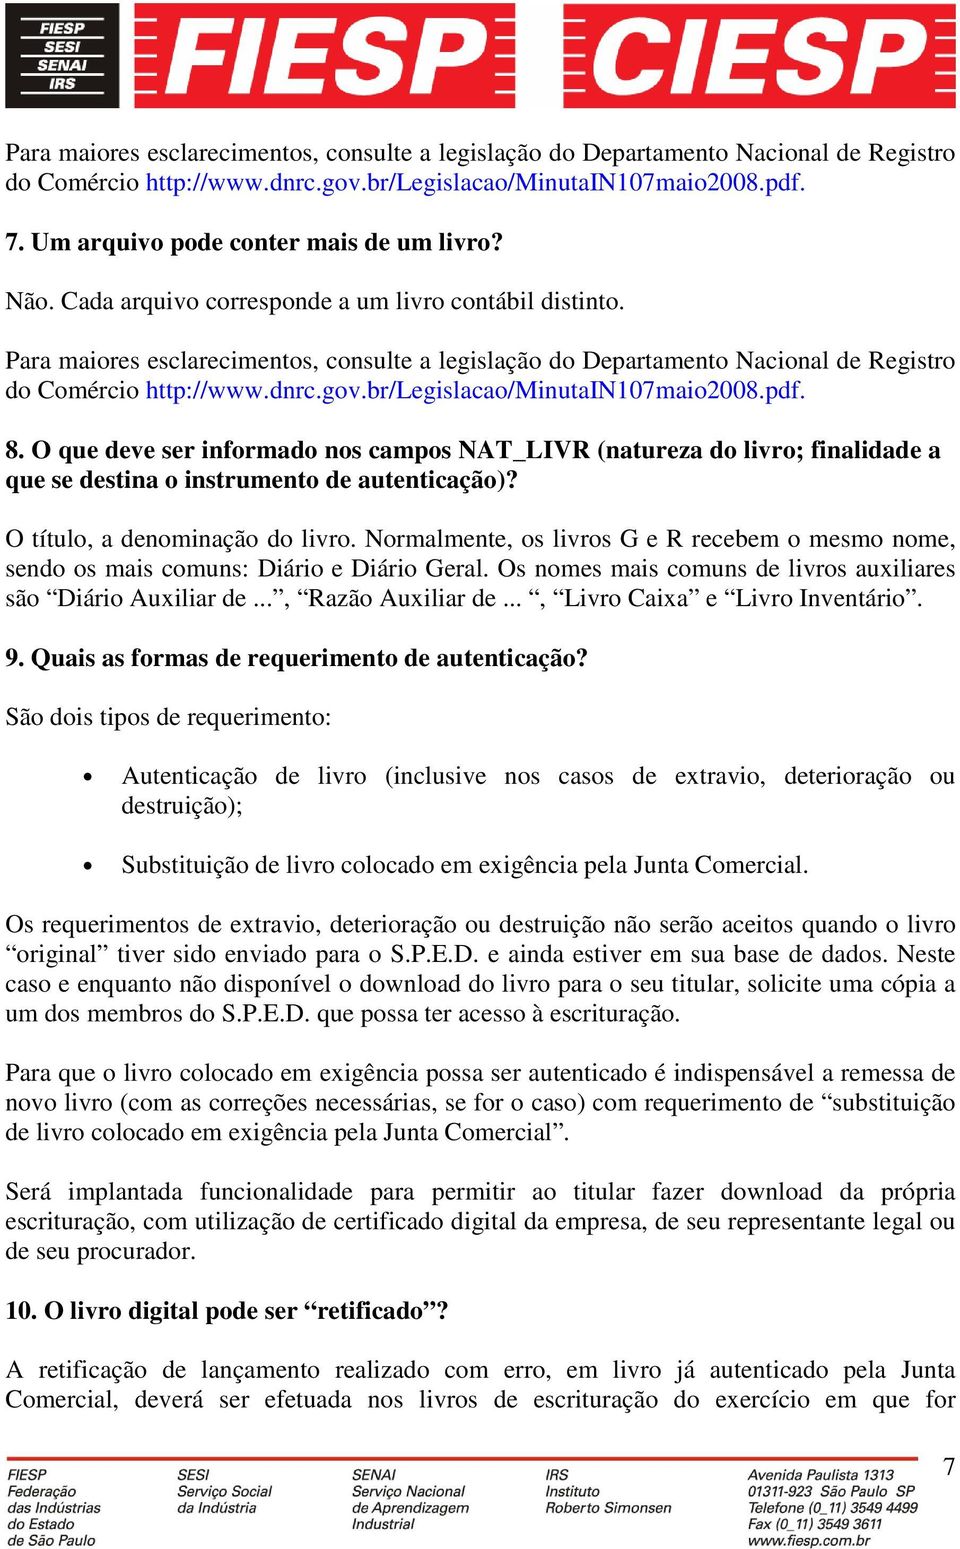 Para maiores esclarecimentos, consulte a legislação do Departamento Nacional de Registro do Comércio http://www.dnrc.gov.br/legislacao/minutain107maio2008.pdf. 8.